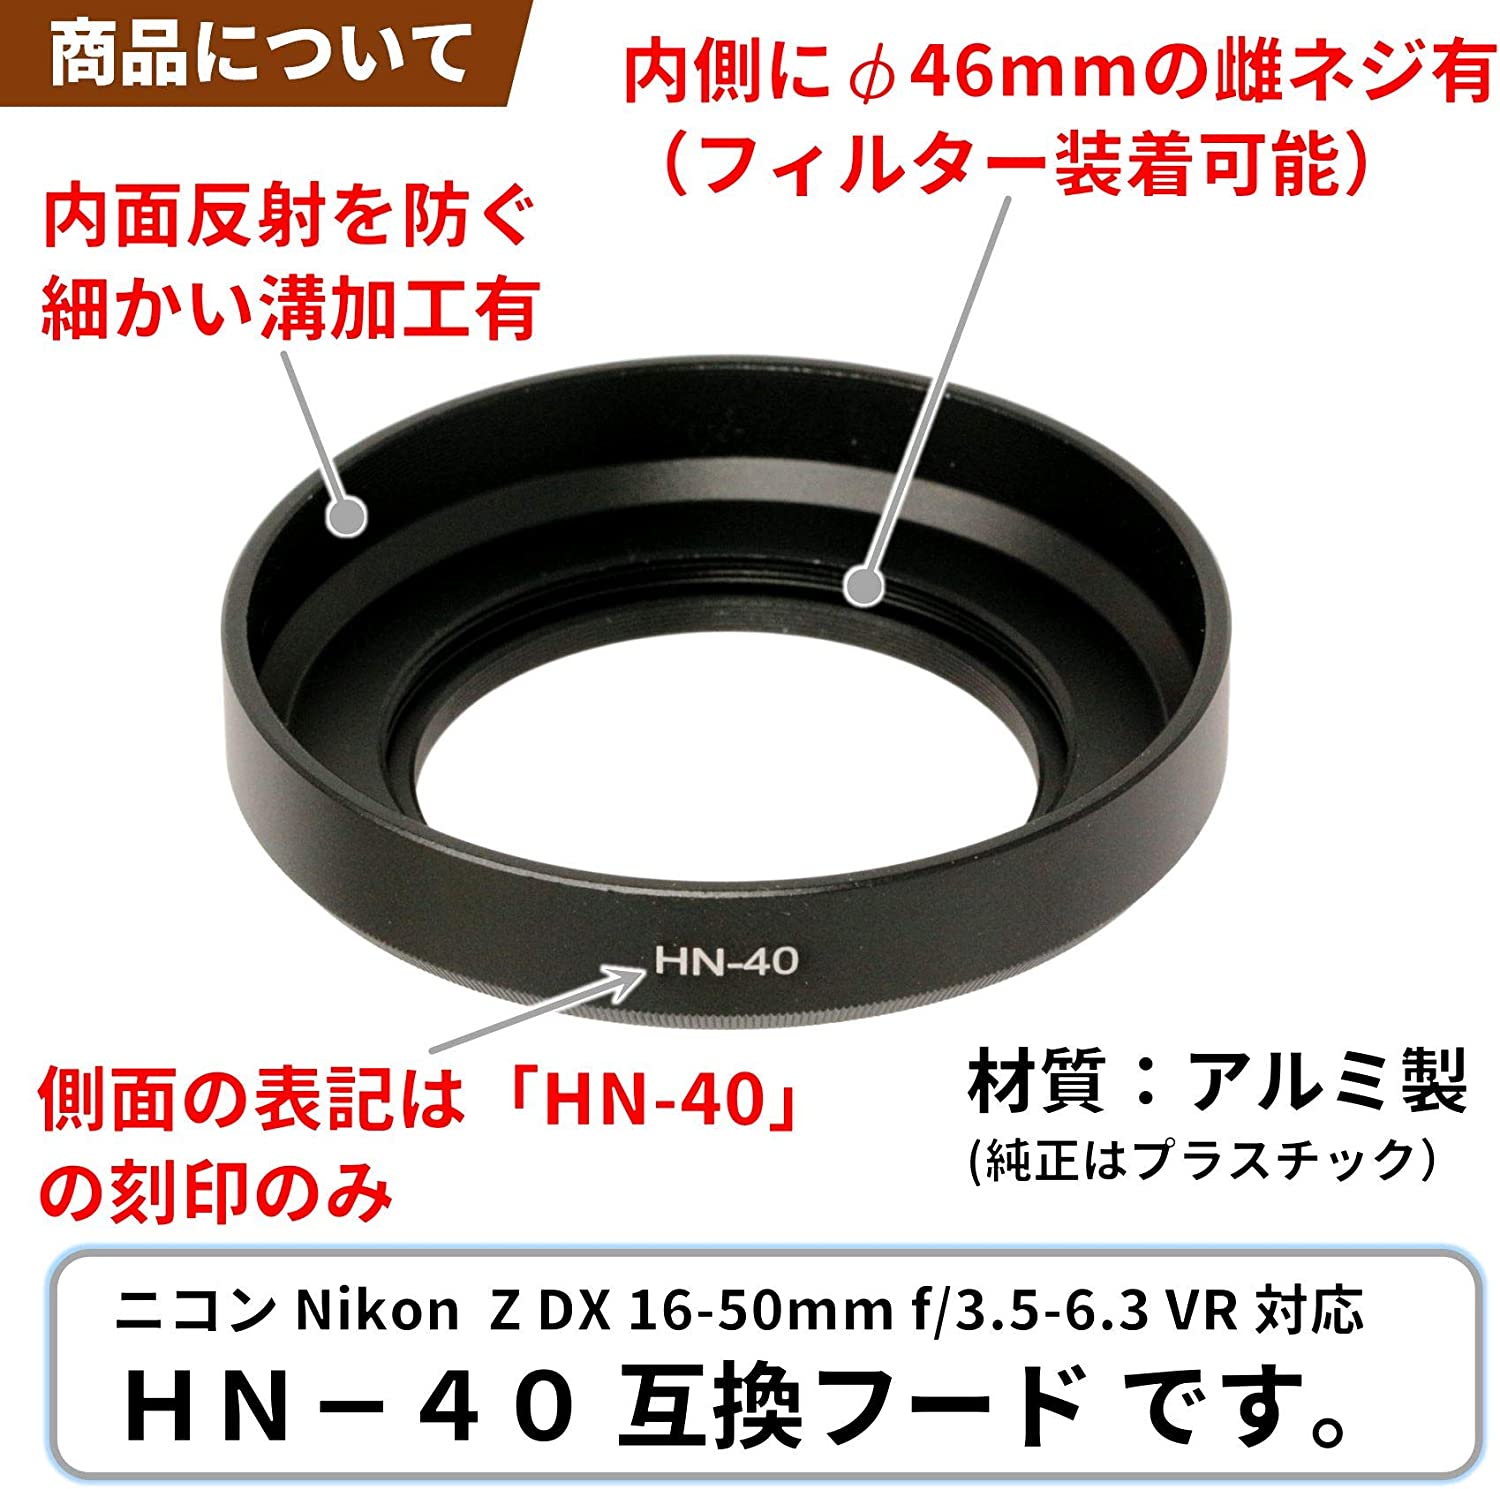 F-Foto  レンズフード HN-40 ブラック  (対象レンズ: ニコン Z DX 16-50mm f/3.5-6.3 VR) エフフォト